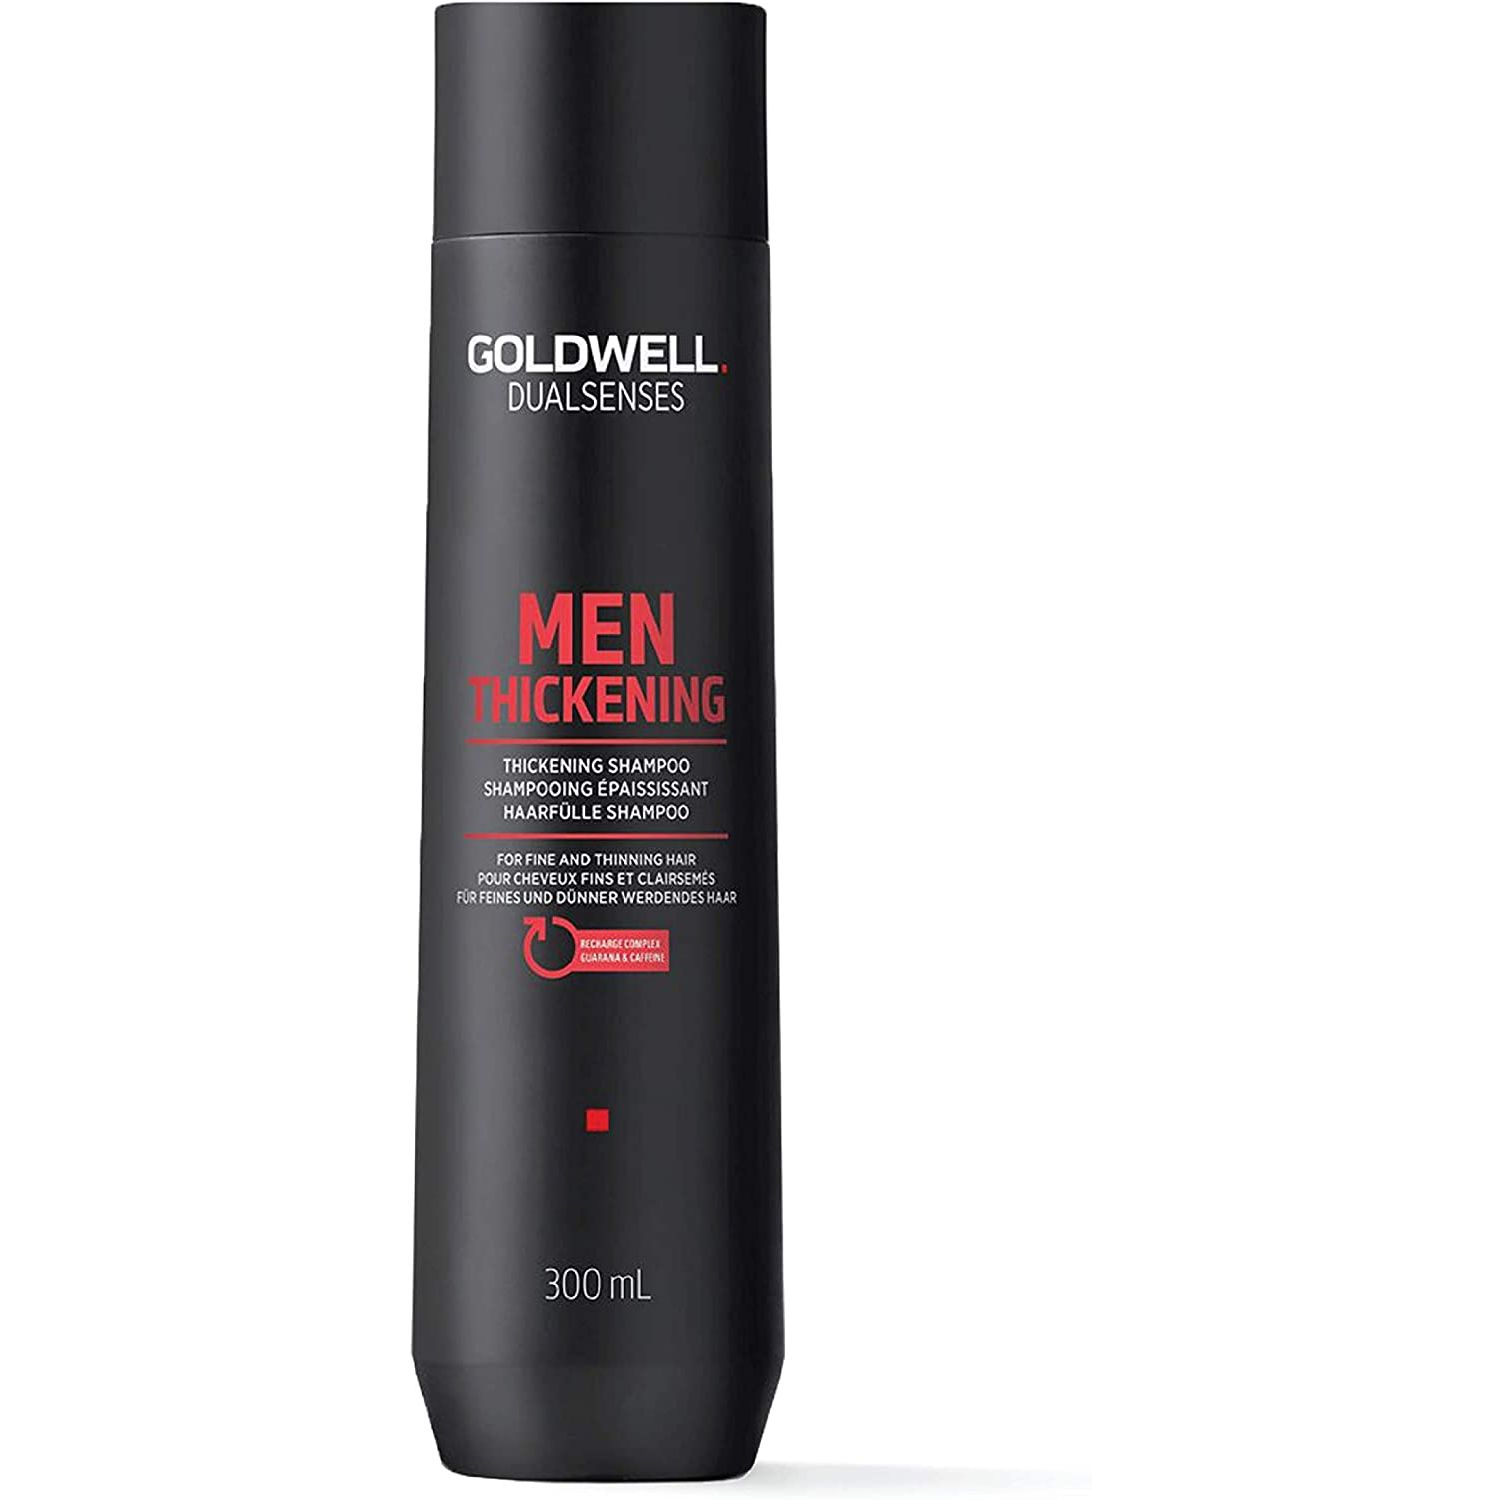 Укрепляющий шампунь для волос Goldwell 300 мл - купить в ООО "АФ БЬЮТИ СТОР", цена на Мегамаркет